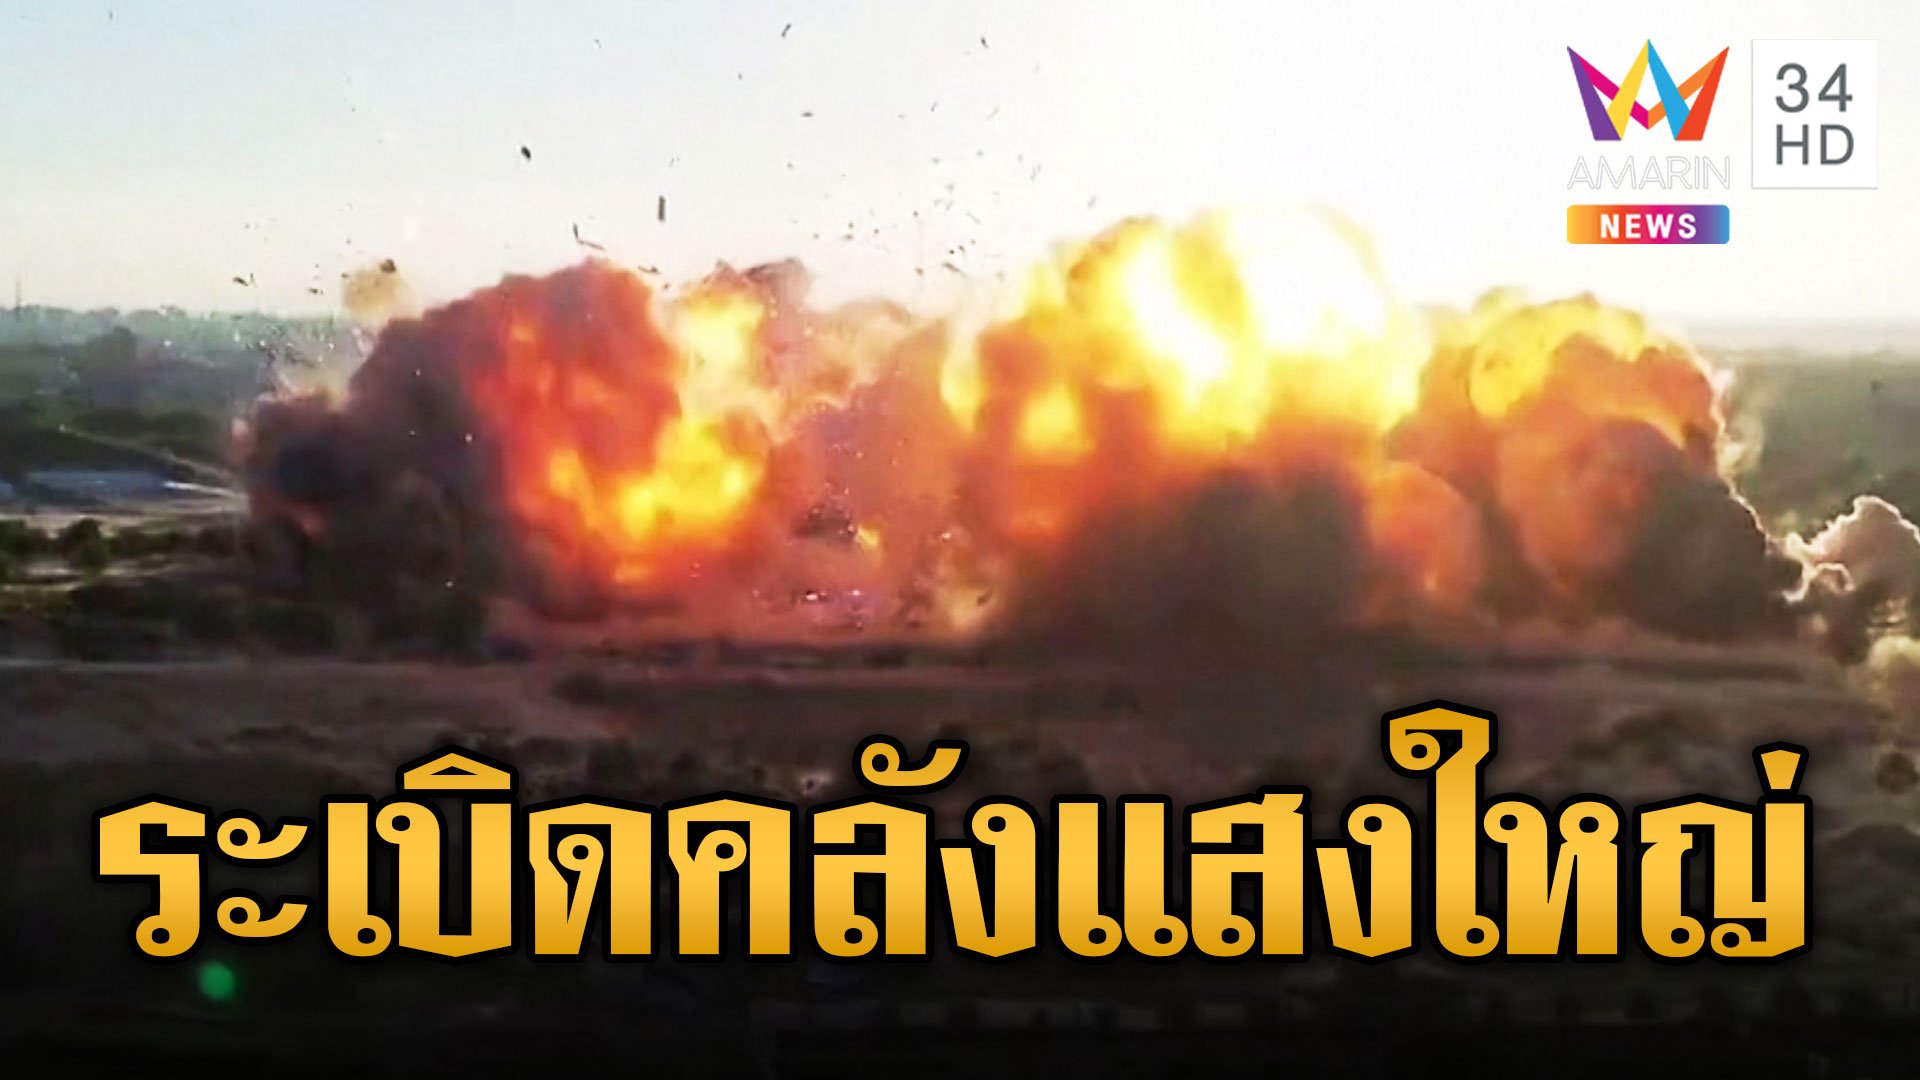 เปิดนาที! ระเบิดคลังแสง กลุ่มญีฮัดอิสลาม | ข่าวอรุณอมรินทร์ | 18 พ.ย. 66 | AMARIN TVHD34